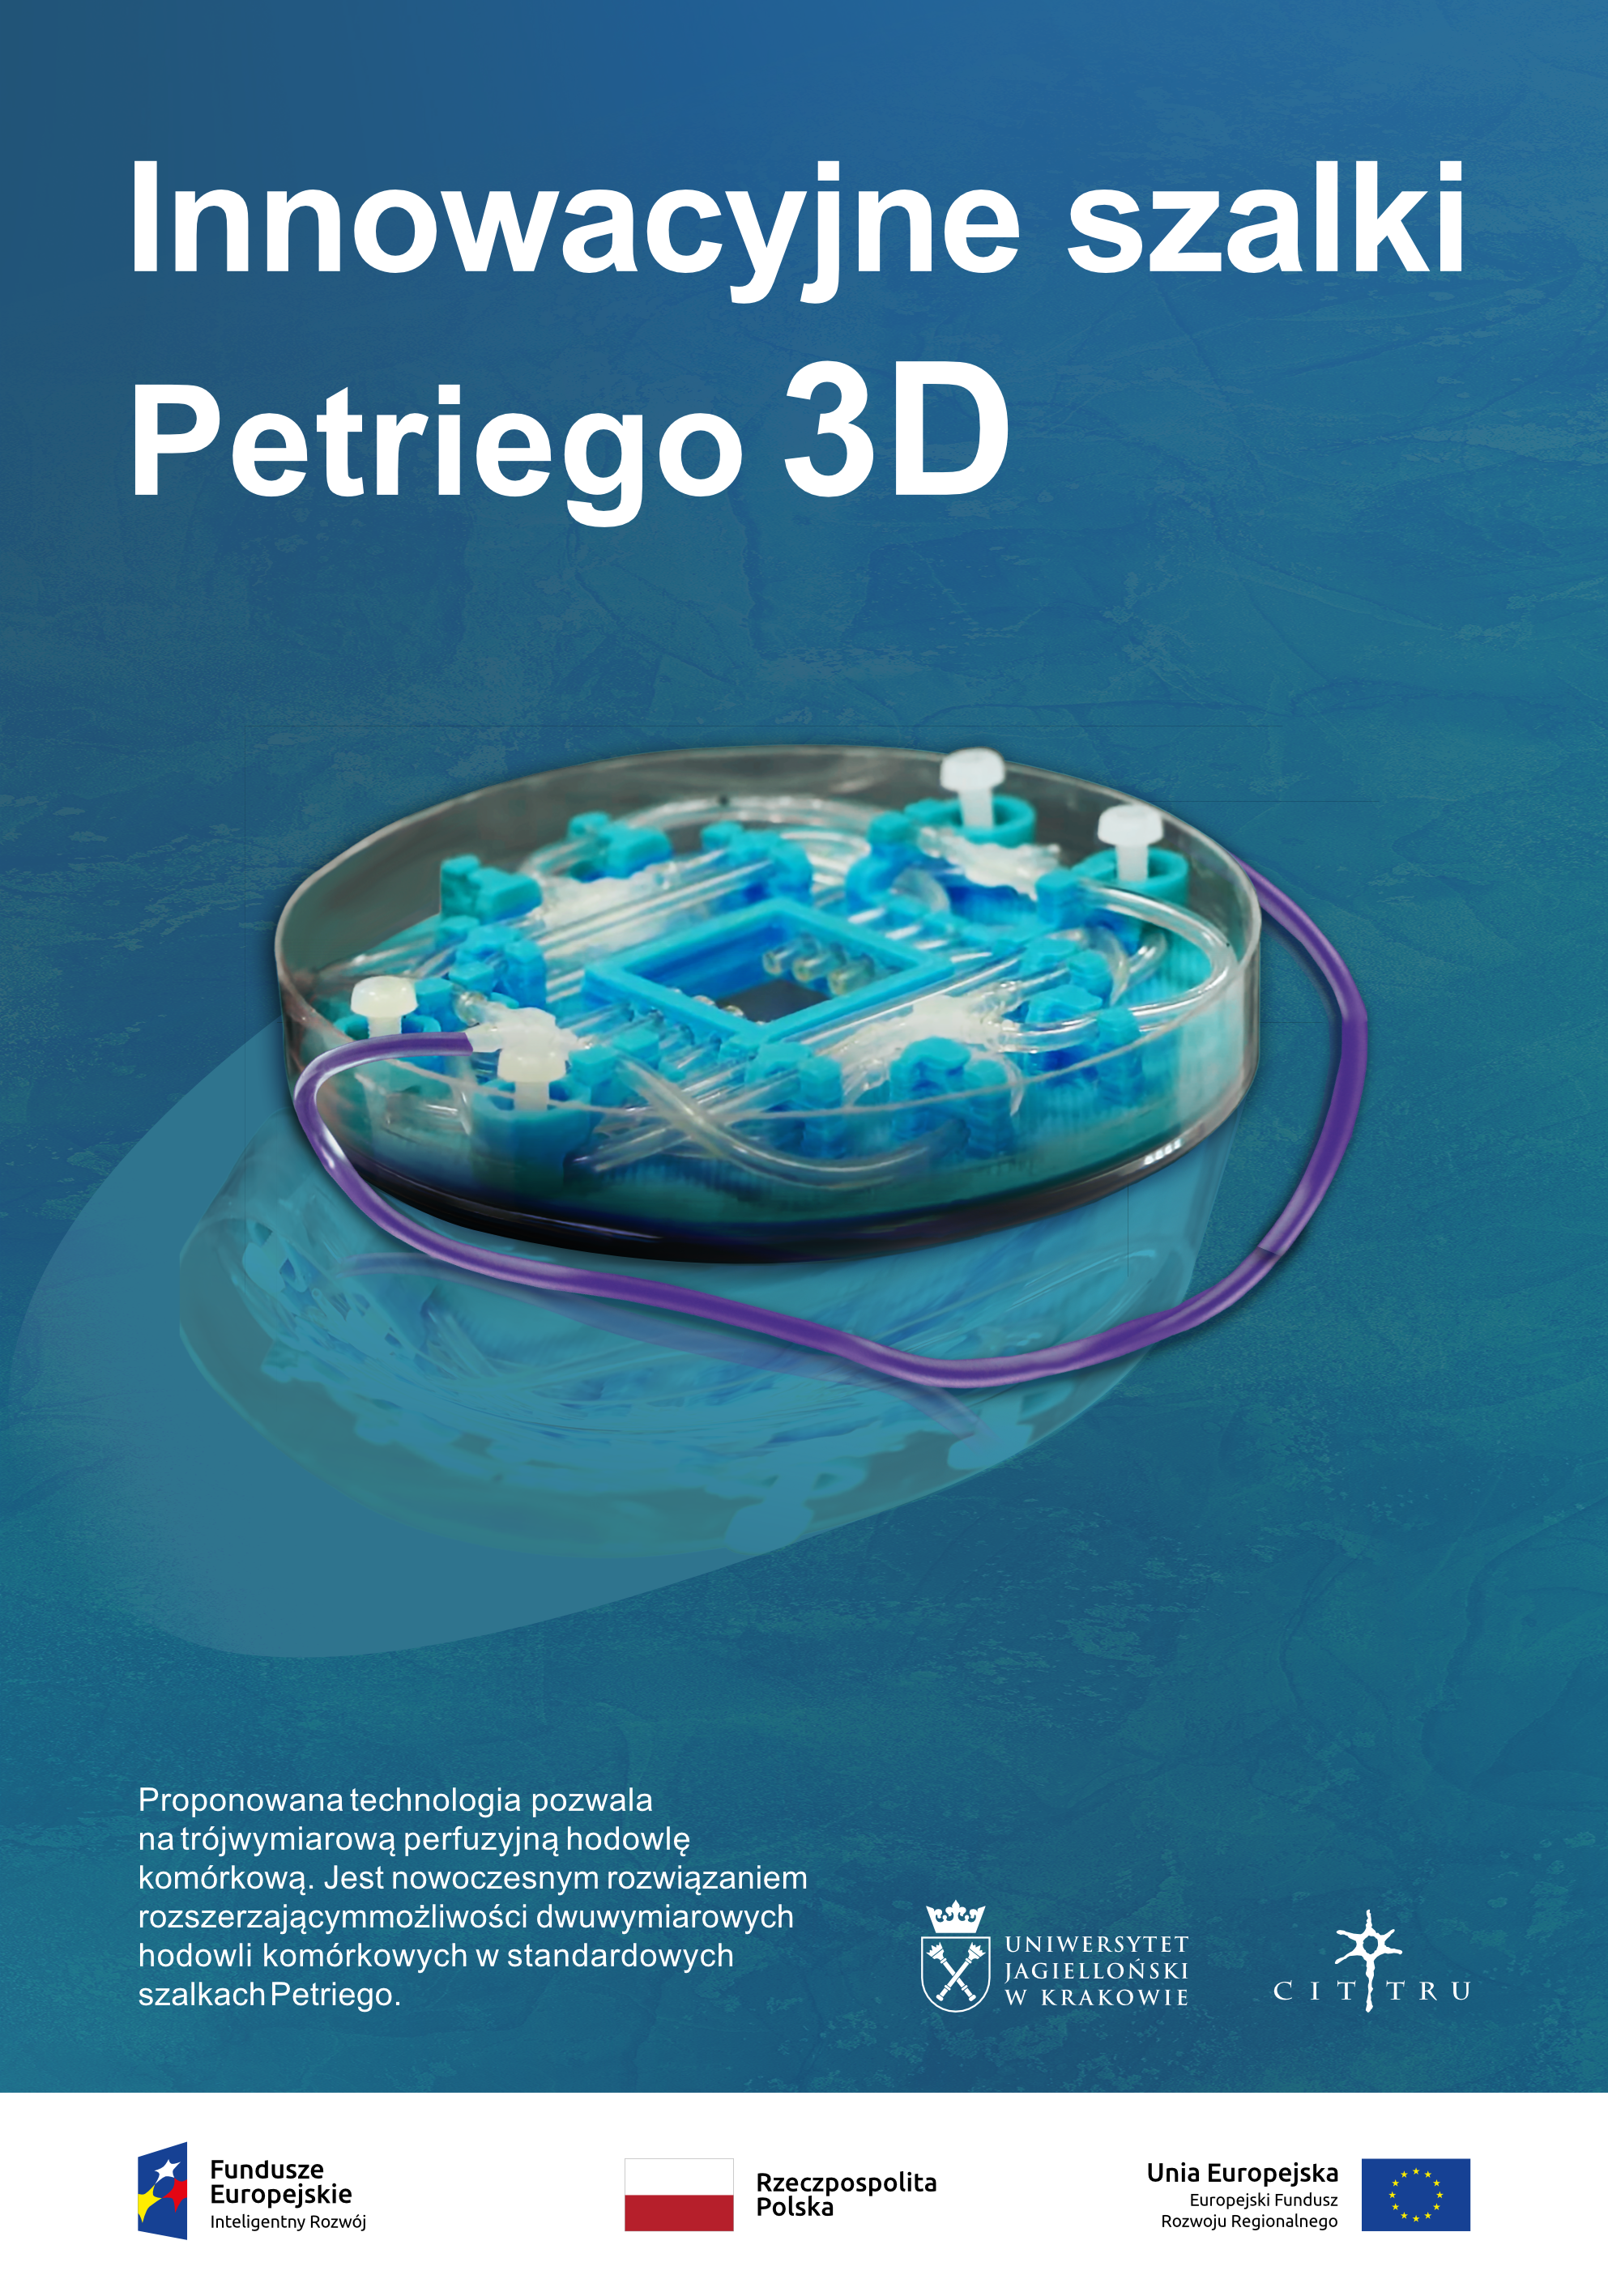 Plakat przedstawia szalki petriego 3D